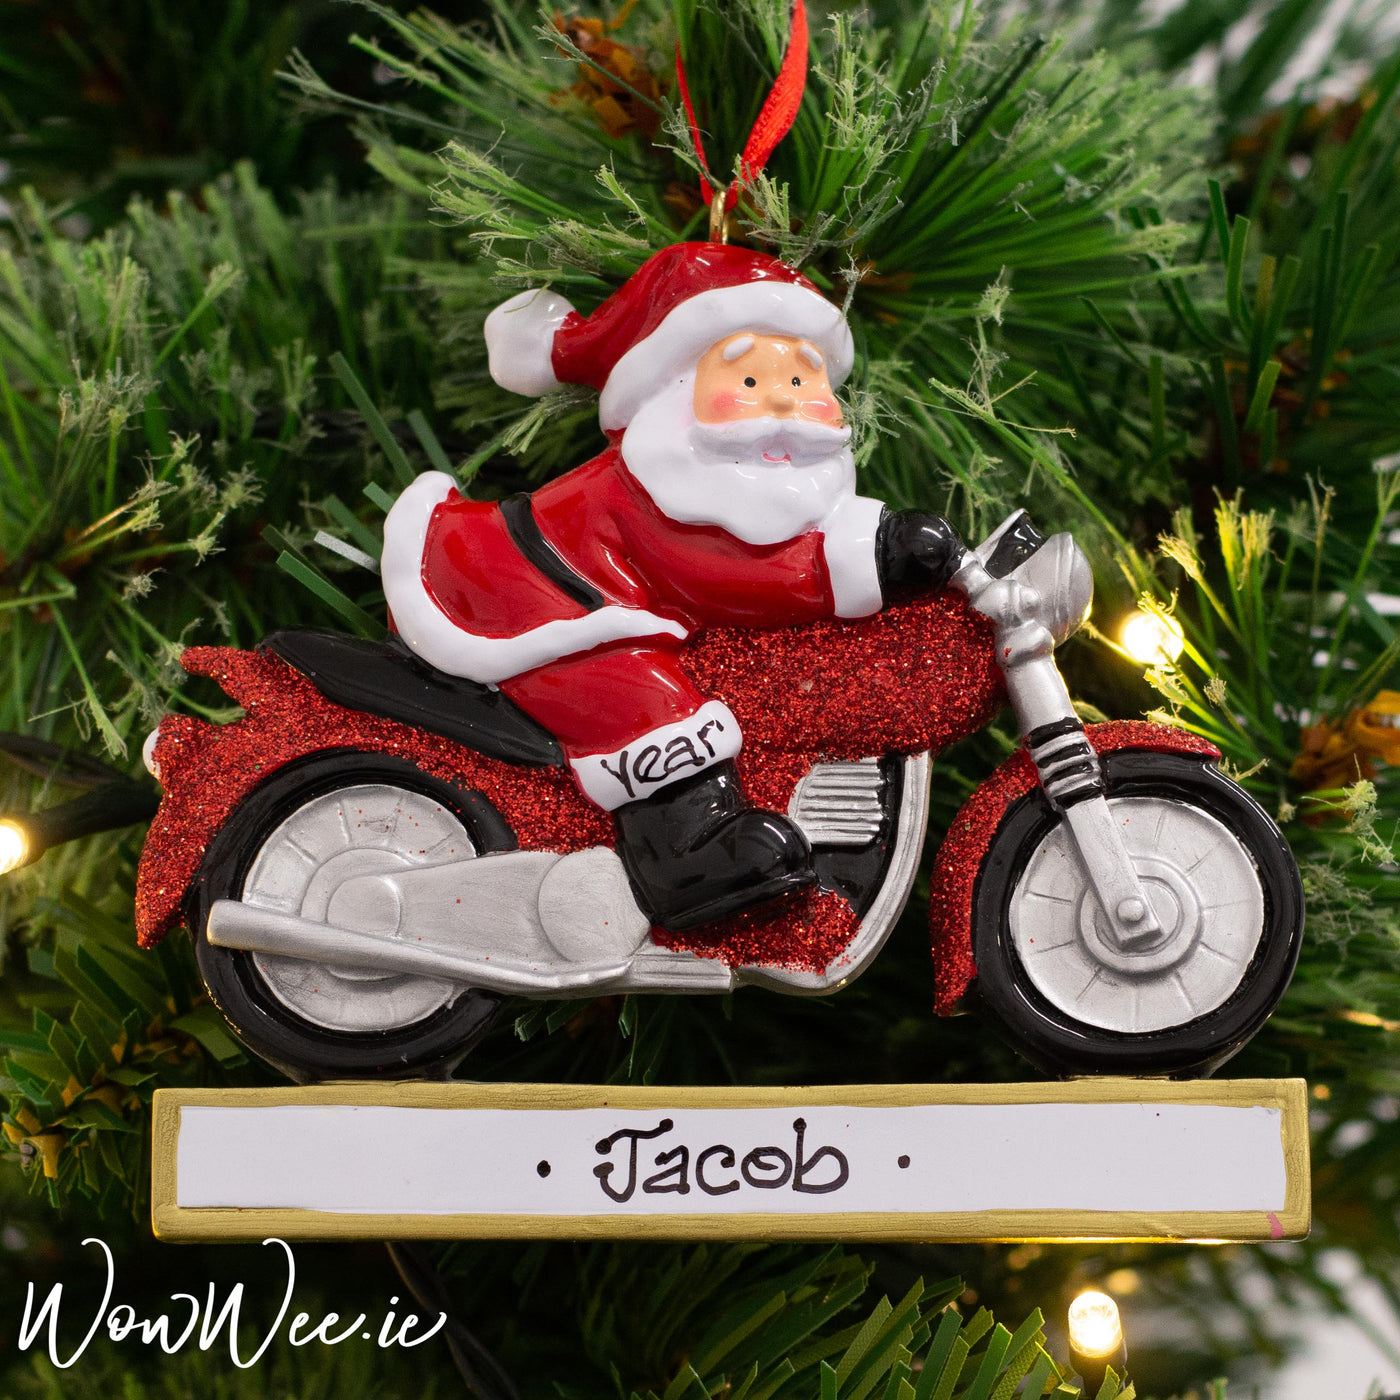 Personalised Christmas Ornament - Santa on Motorbike - WowWee.ie Personalised Gifts